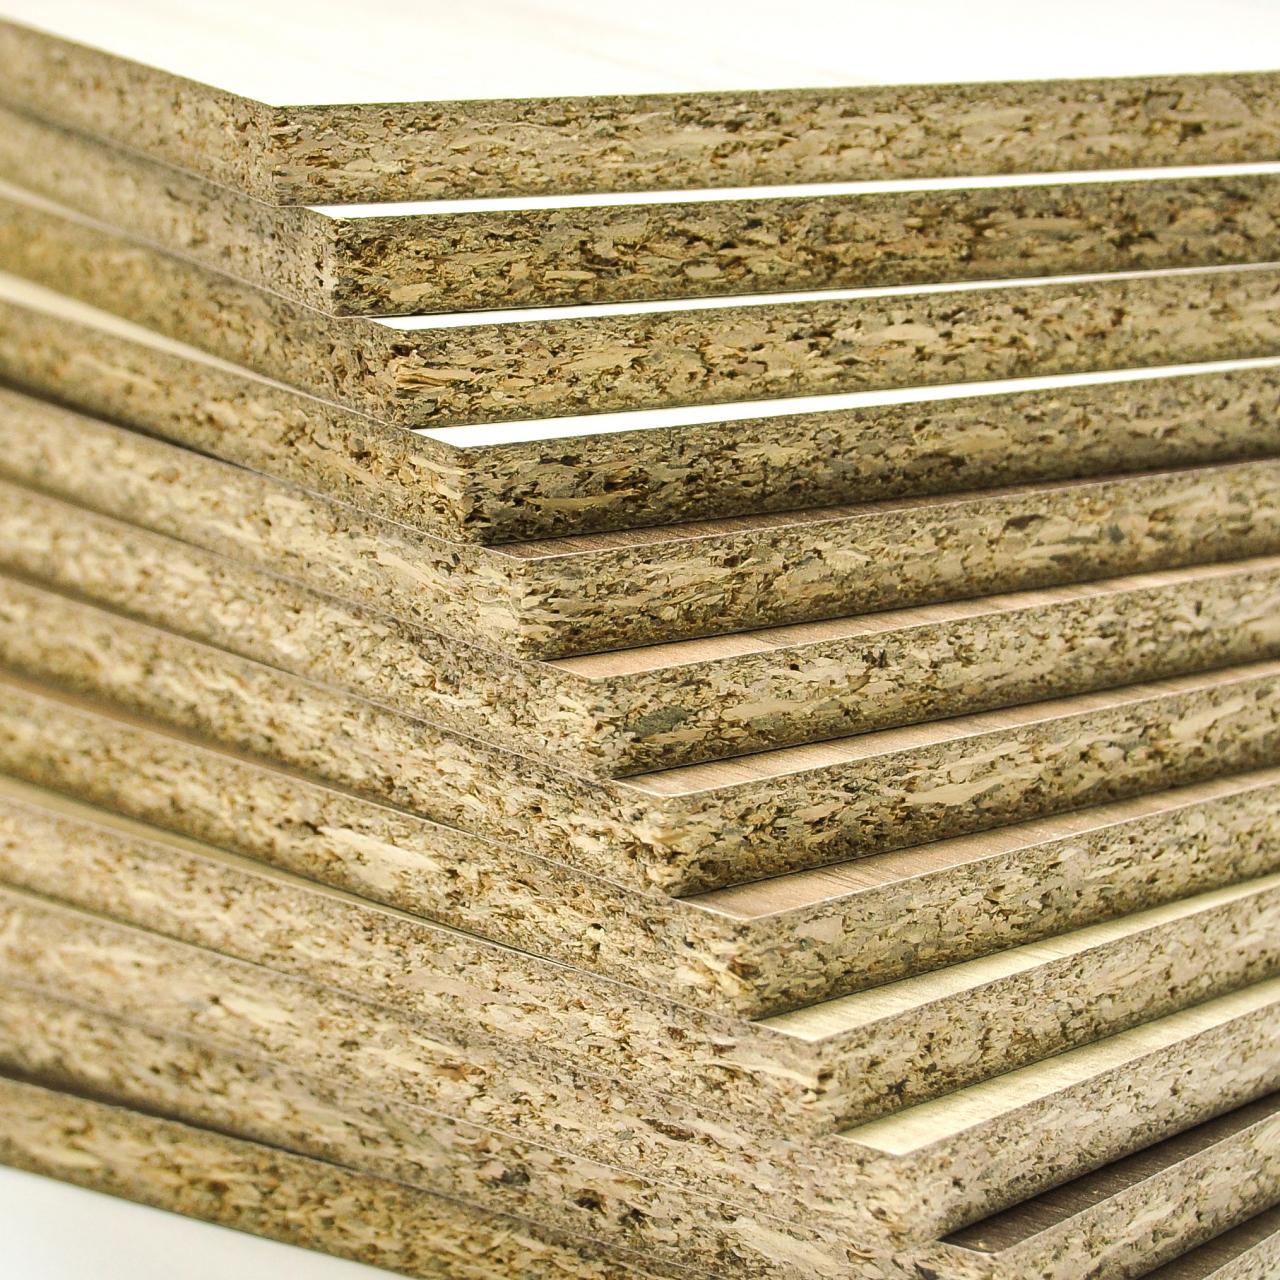 实木颗粒板   实木颗粒板是由木材或其他木质纤维素材料制成的碎料,经